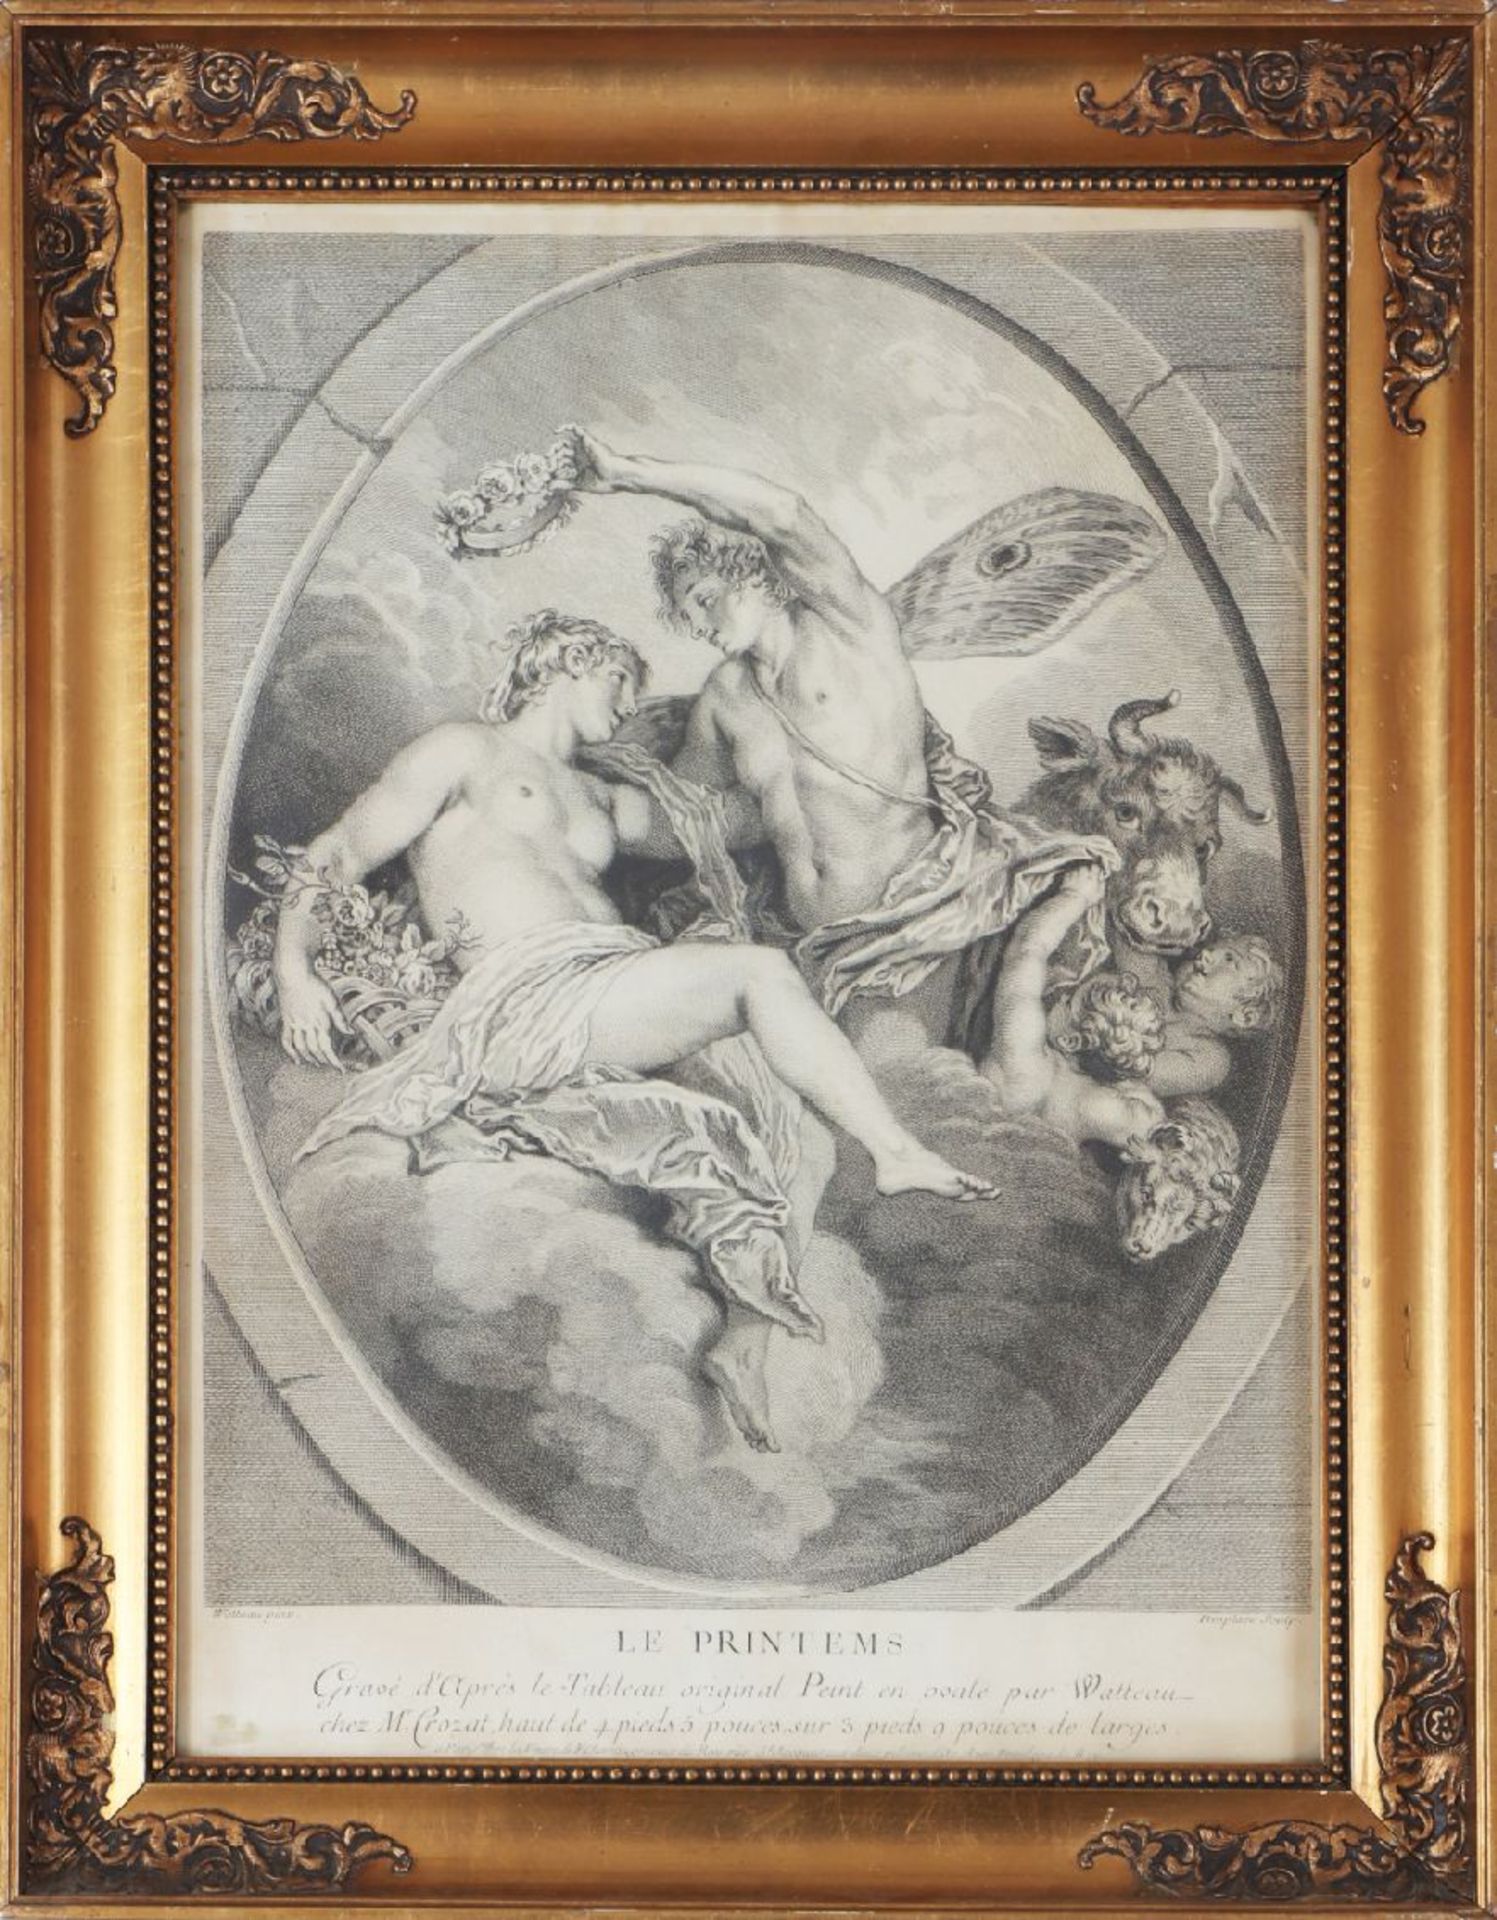 LOUIS DESPLACES (1682 Paris - 1739 ebenda) nach ANTOINE WATTEAUKupferstich, ¨Le Printimps¨ (im